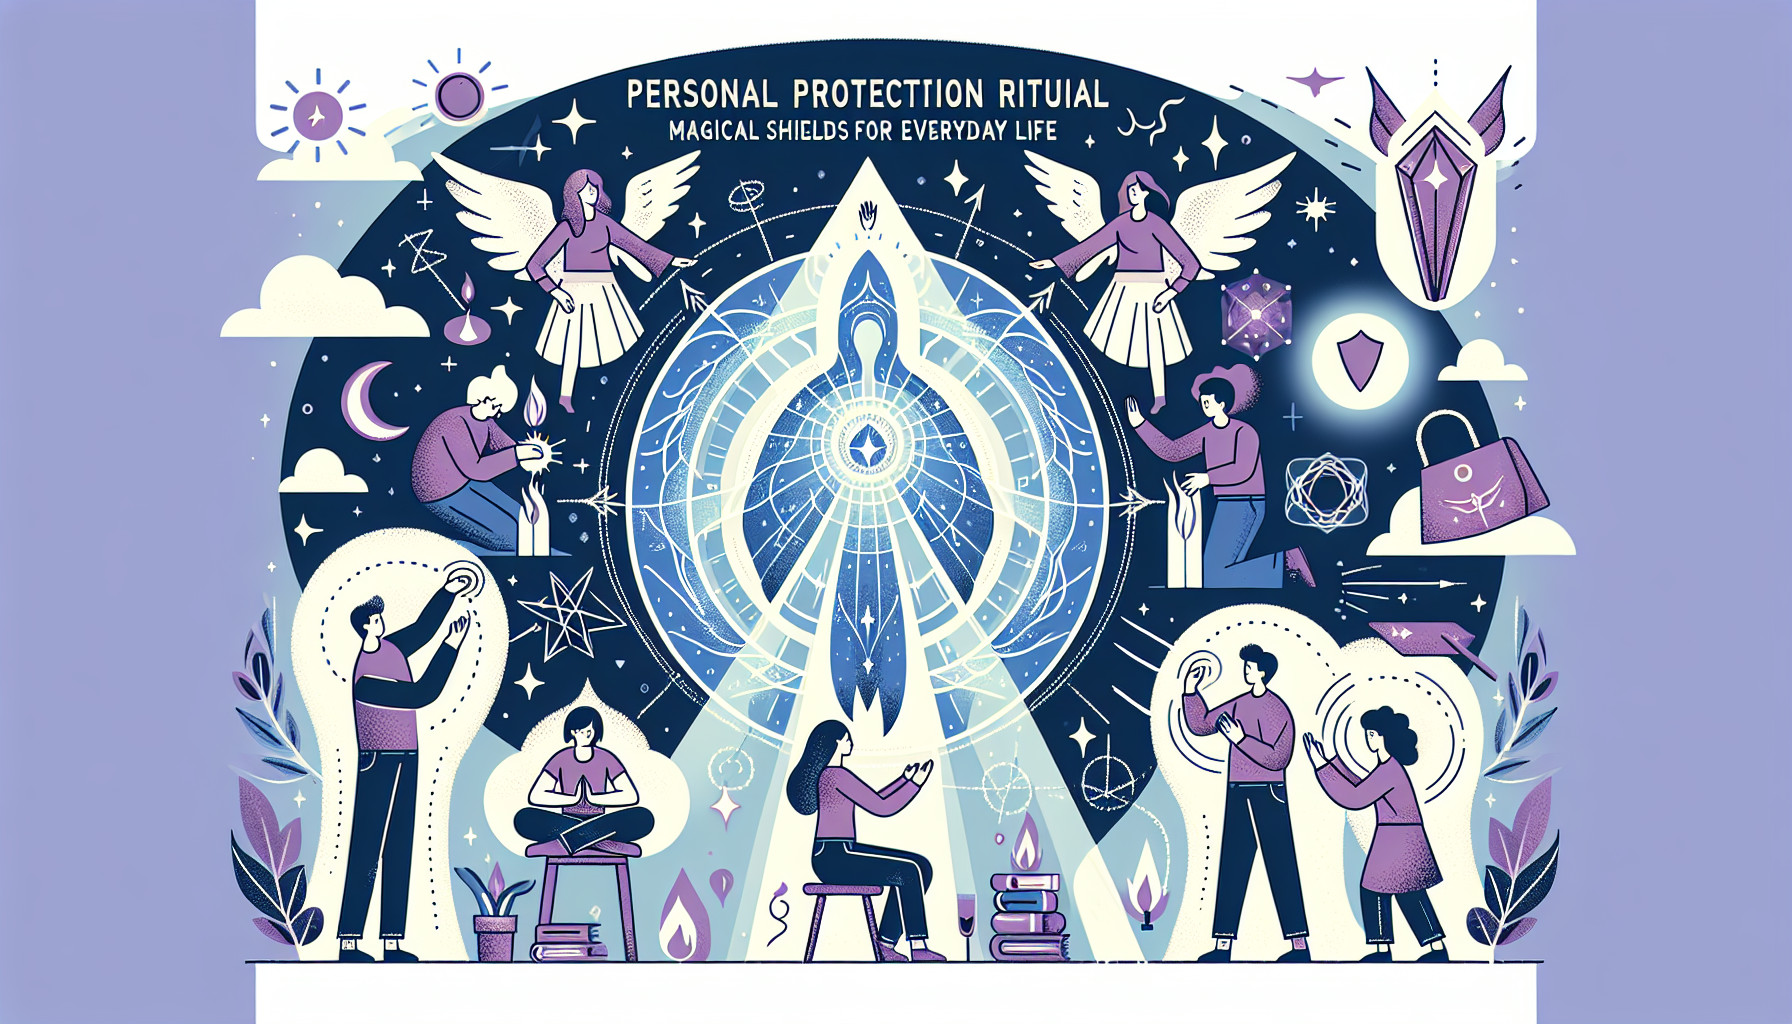 Rituales De Protección Personal: Escudos Mágicos Para La Vida Cotidiana